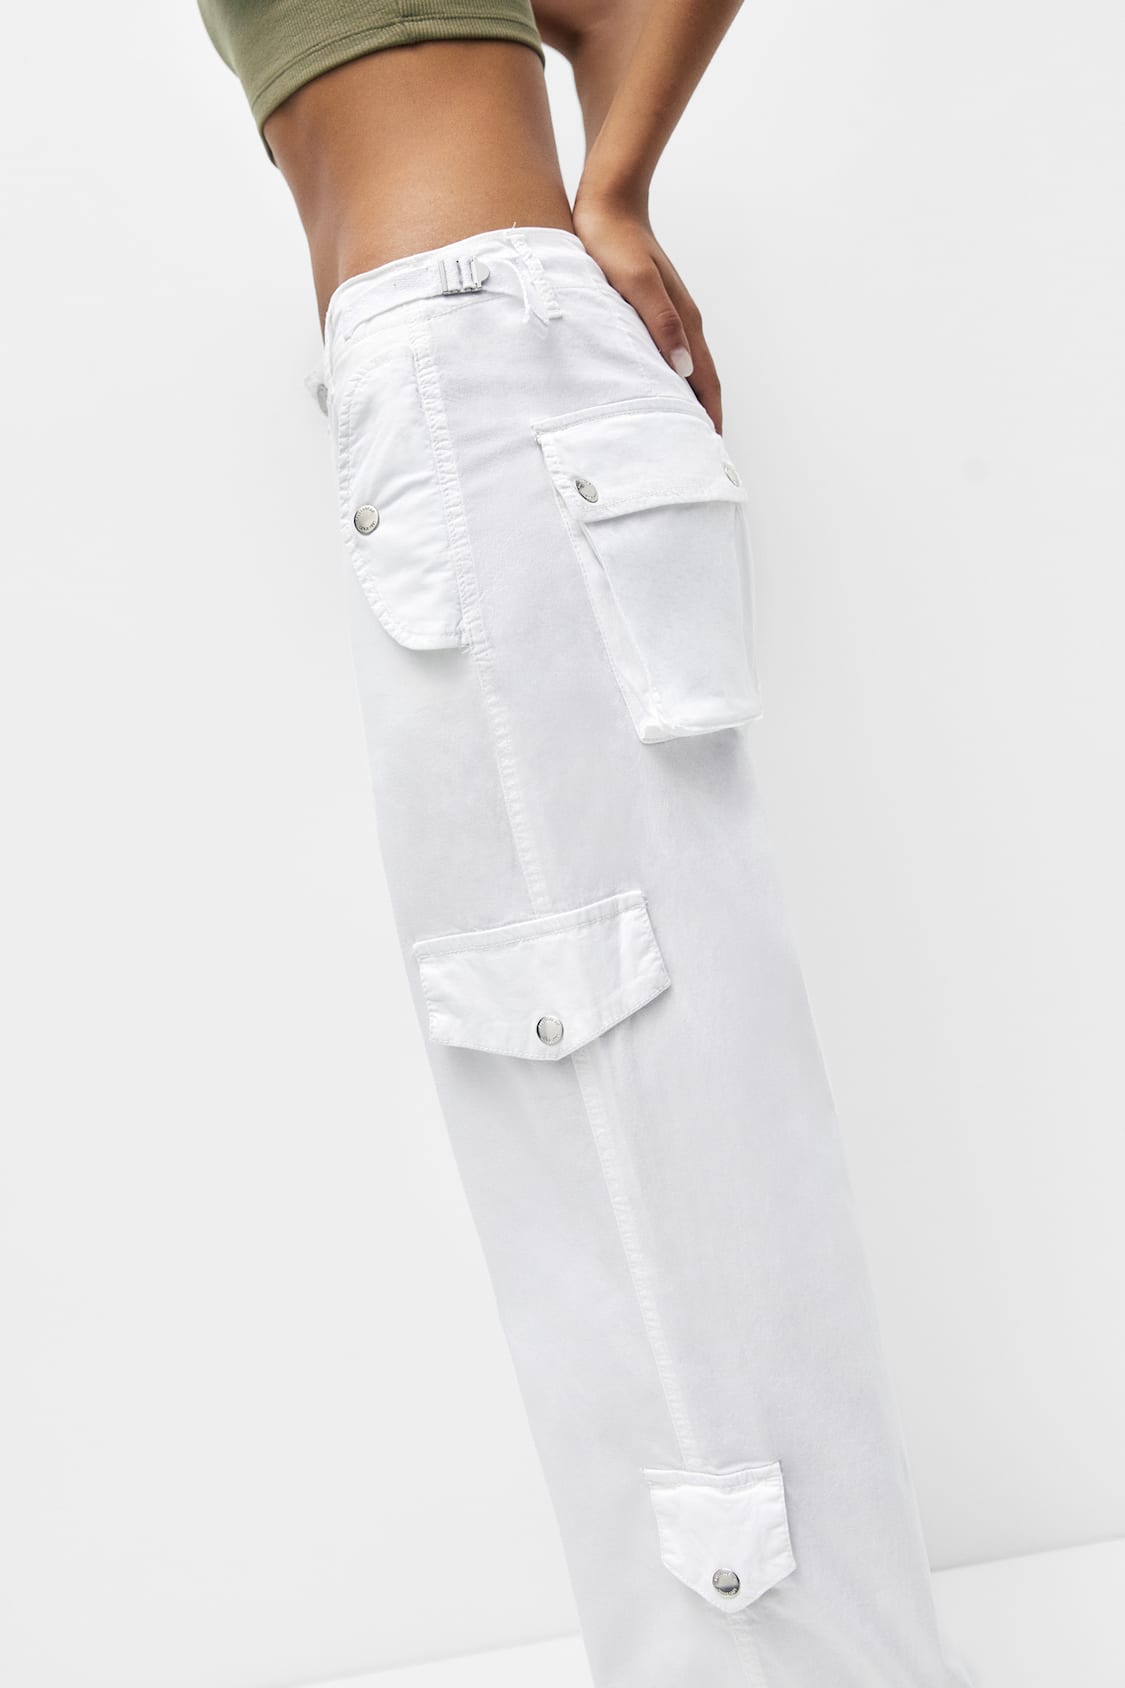 Pantalon cargo en coton taille ajustable